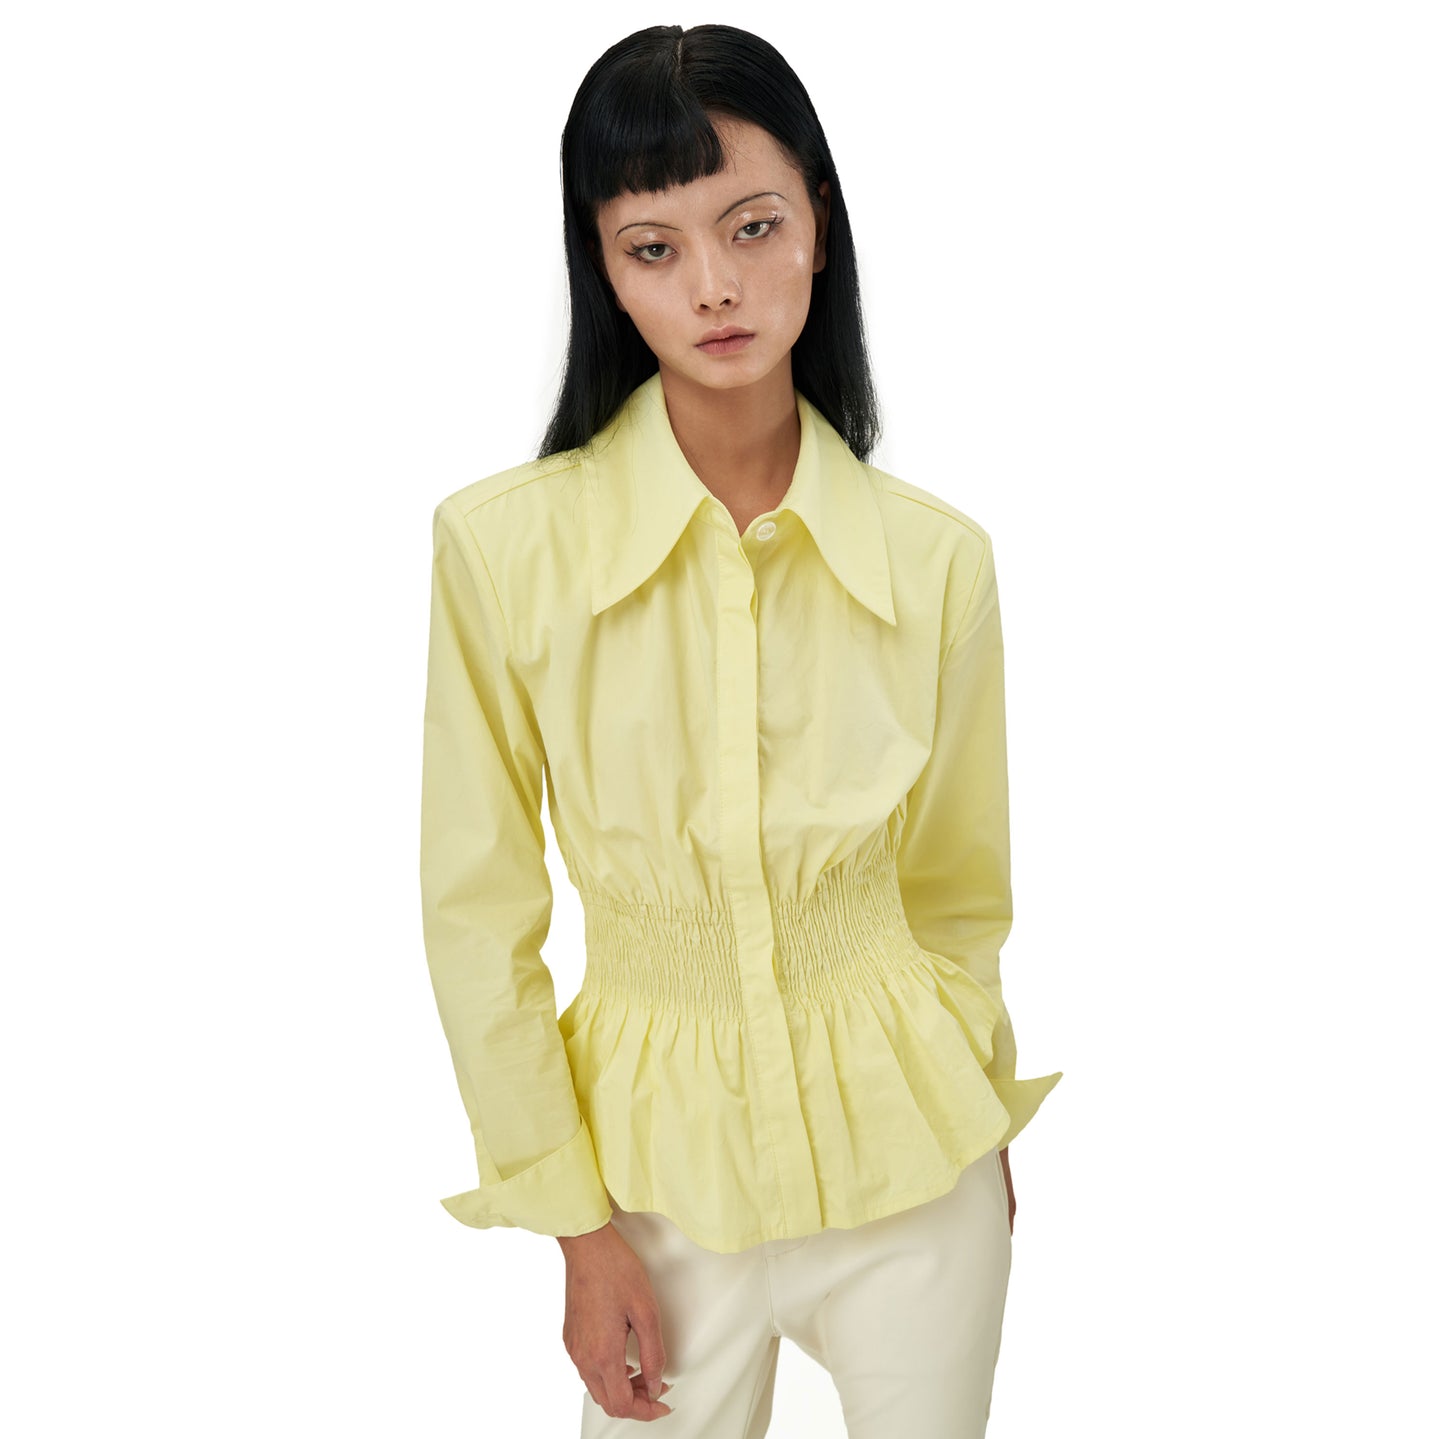 Coana Shirred Waist Poplin Shirt in Lemon